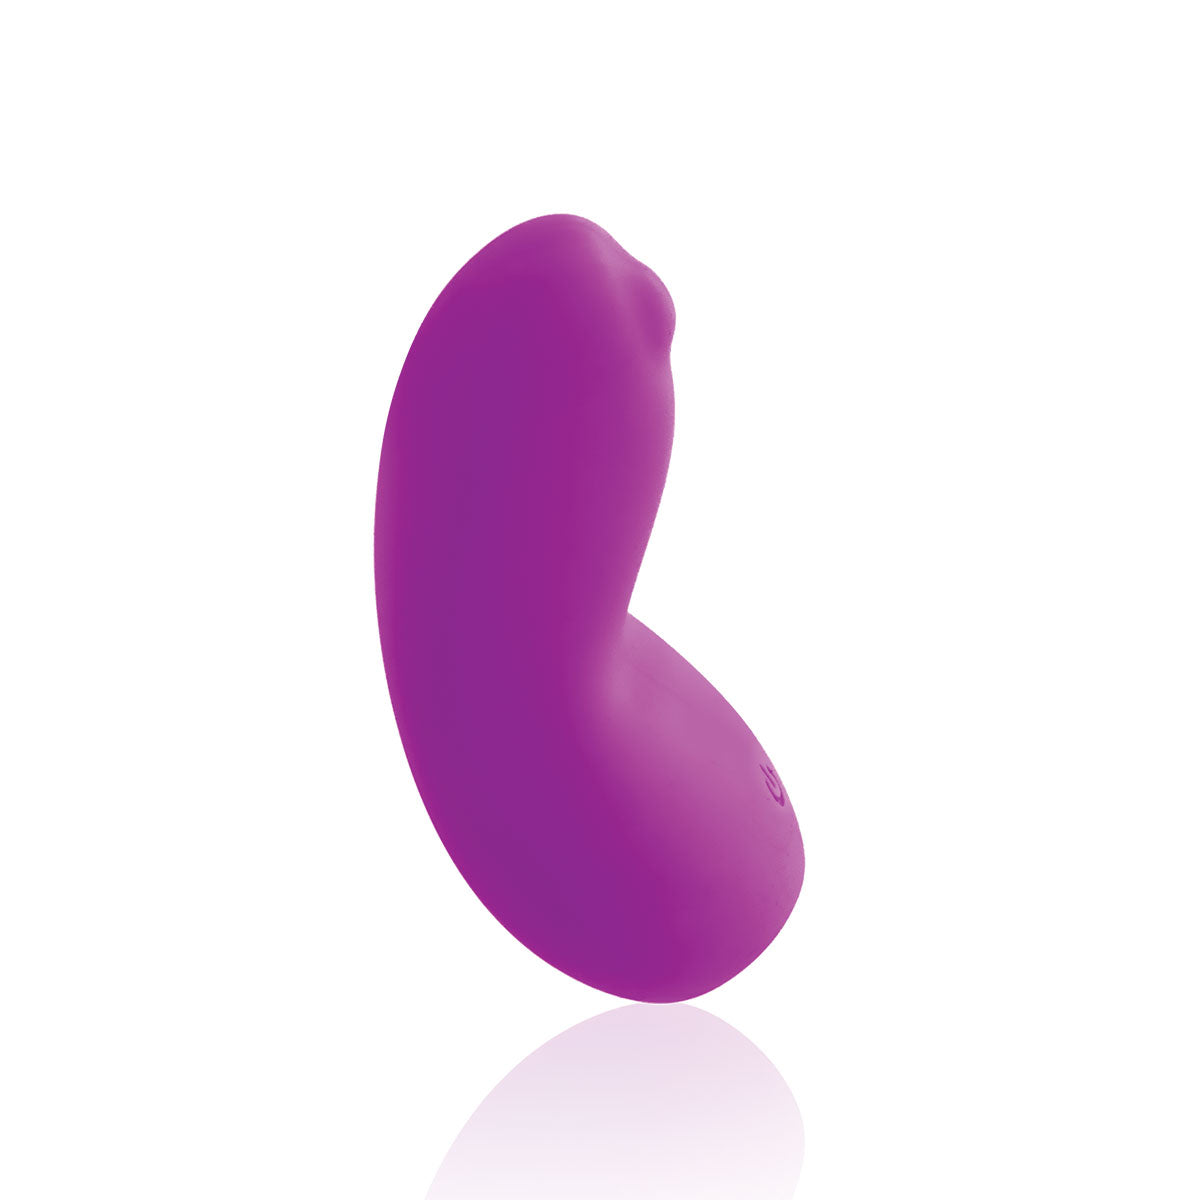 VeDO Izzy Purple Lay-on Vibrator